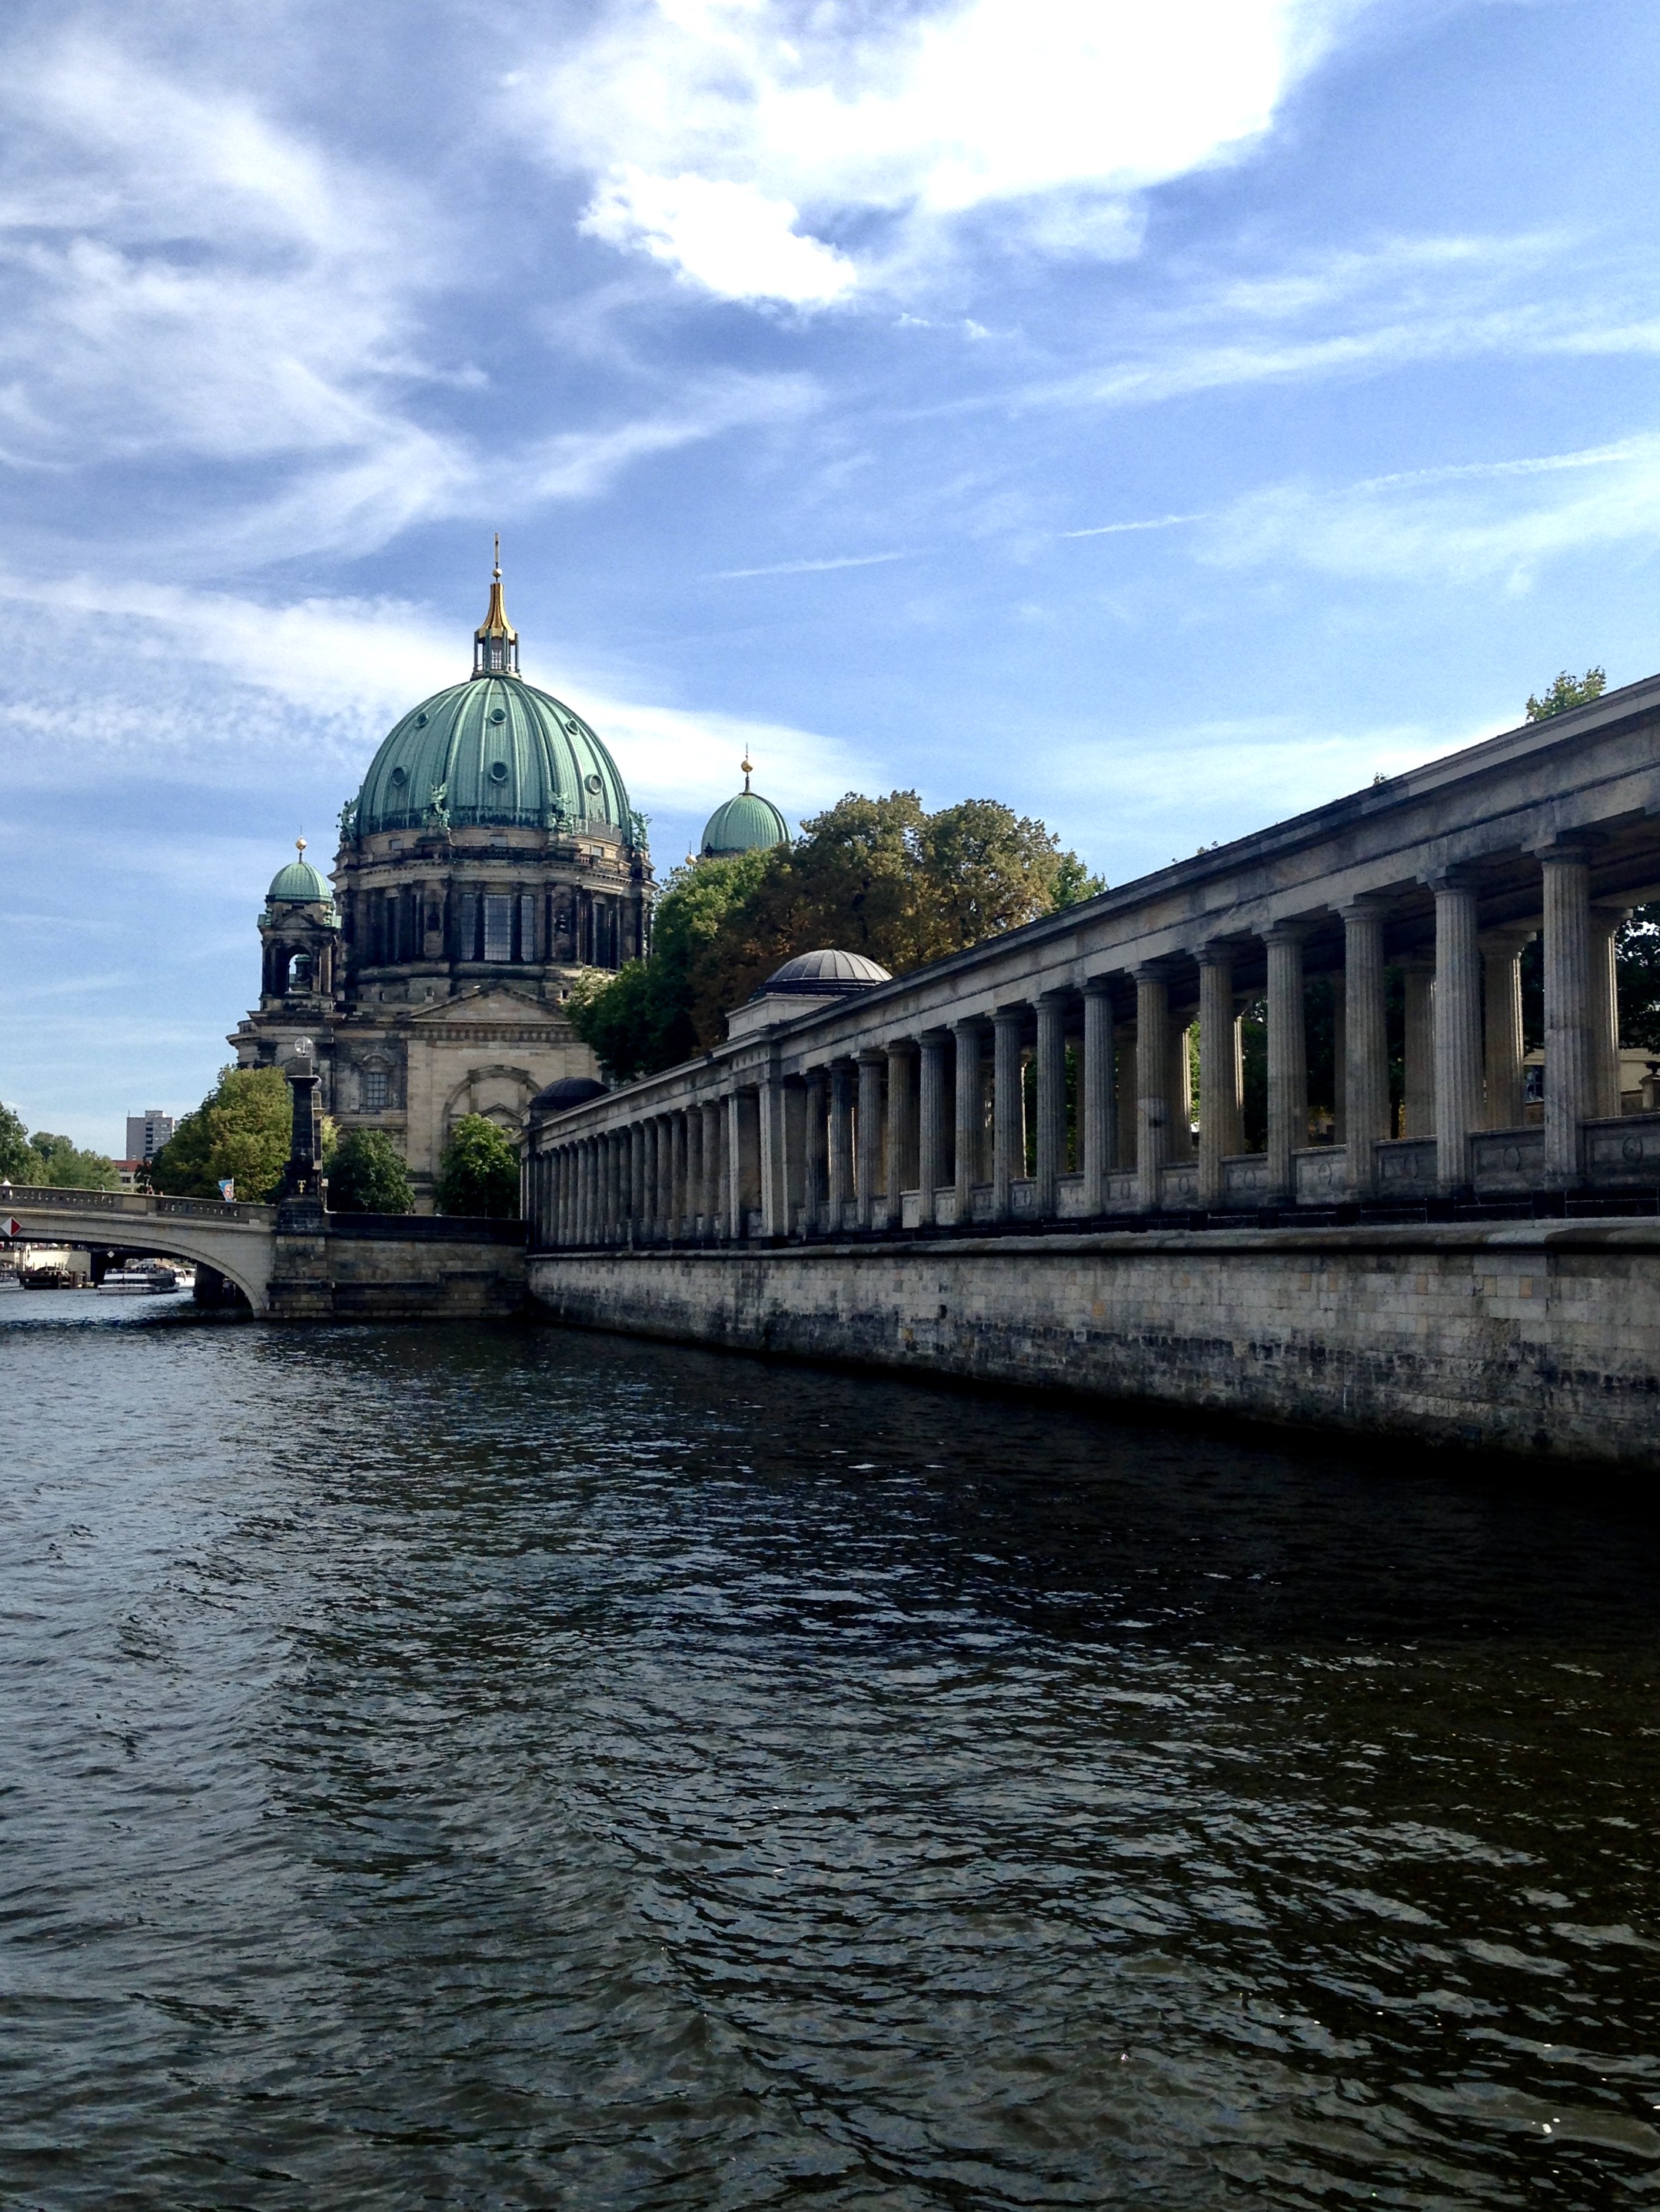 Precum și tot ceea ce descopăr... În spate se observă Catedrala din Berlin (celebrul Dom din Berlin), aflată pe Insula muzeelor